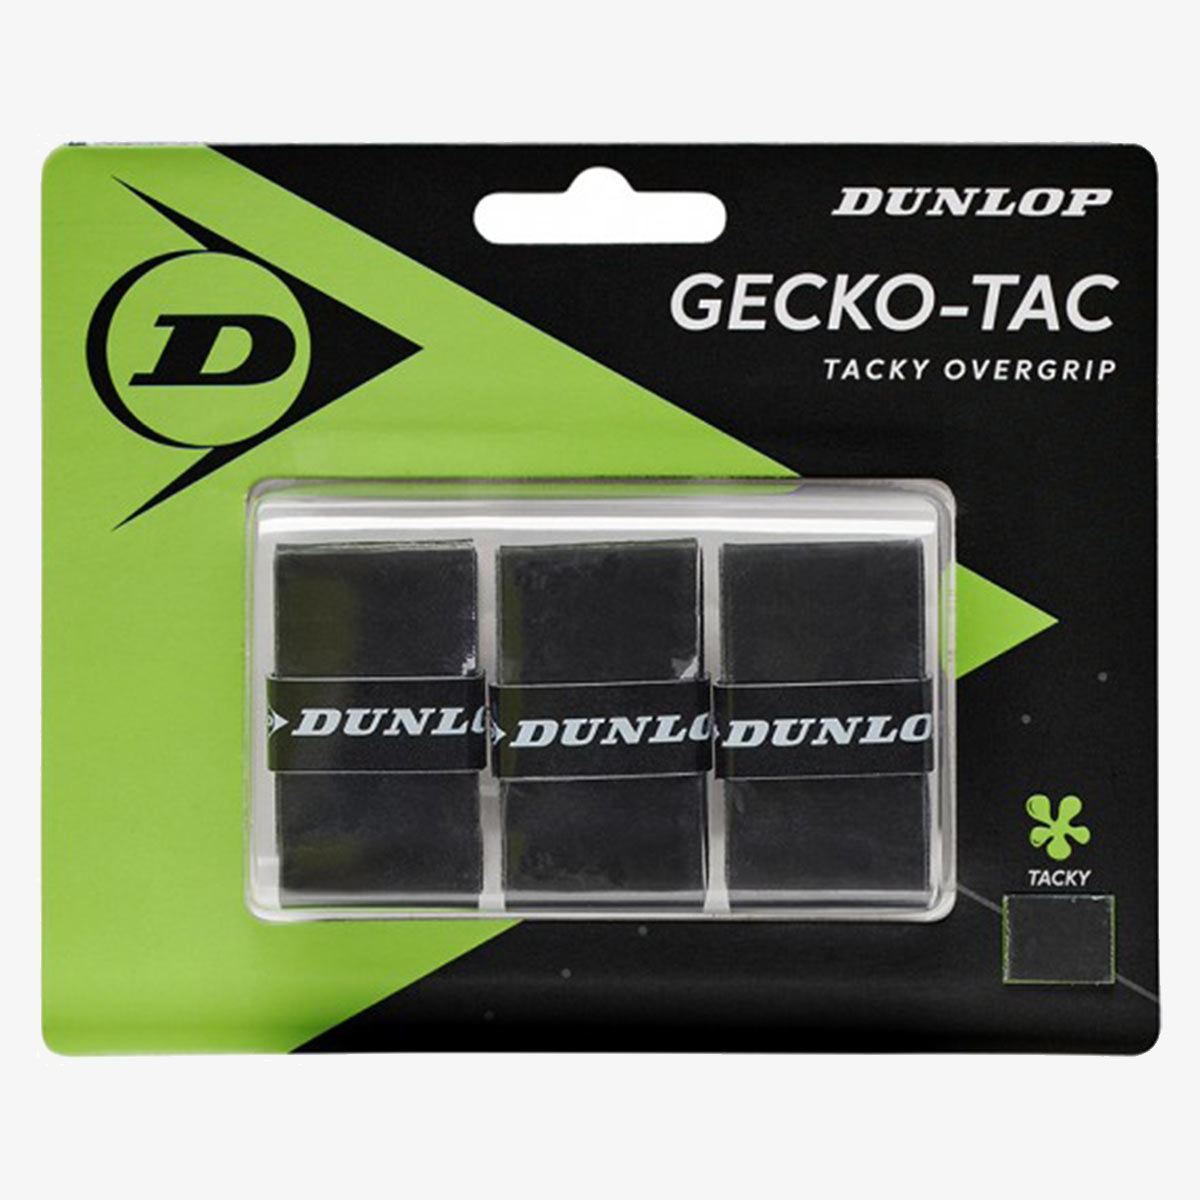 Dunlop GECKO-TAC ogrip black